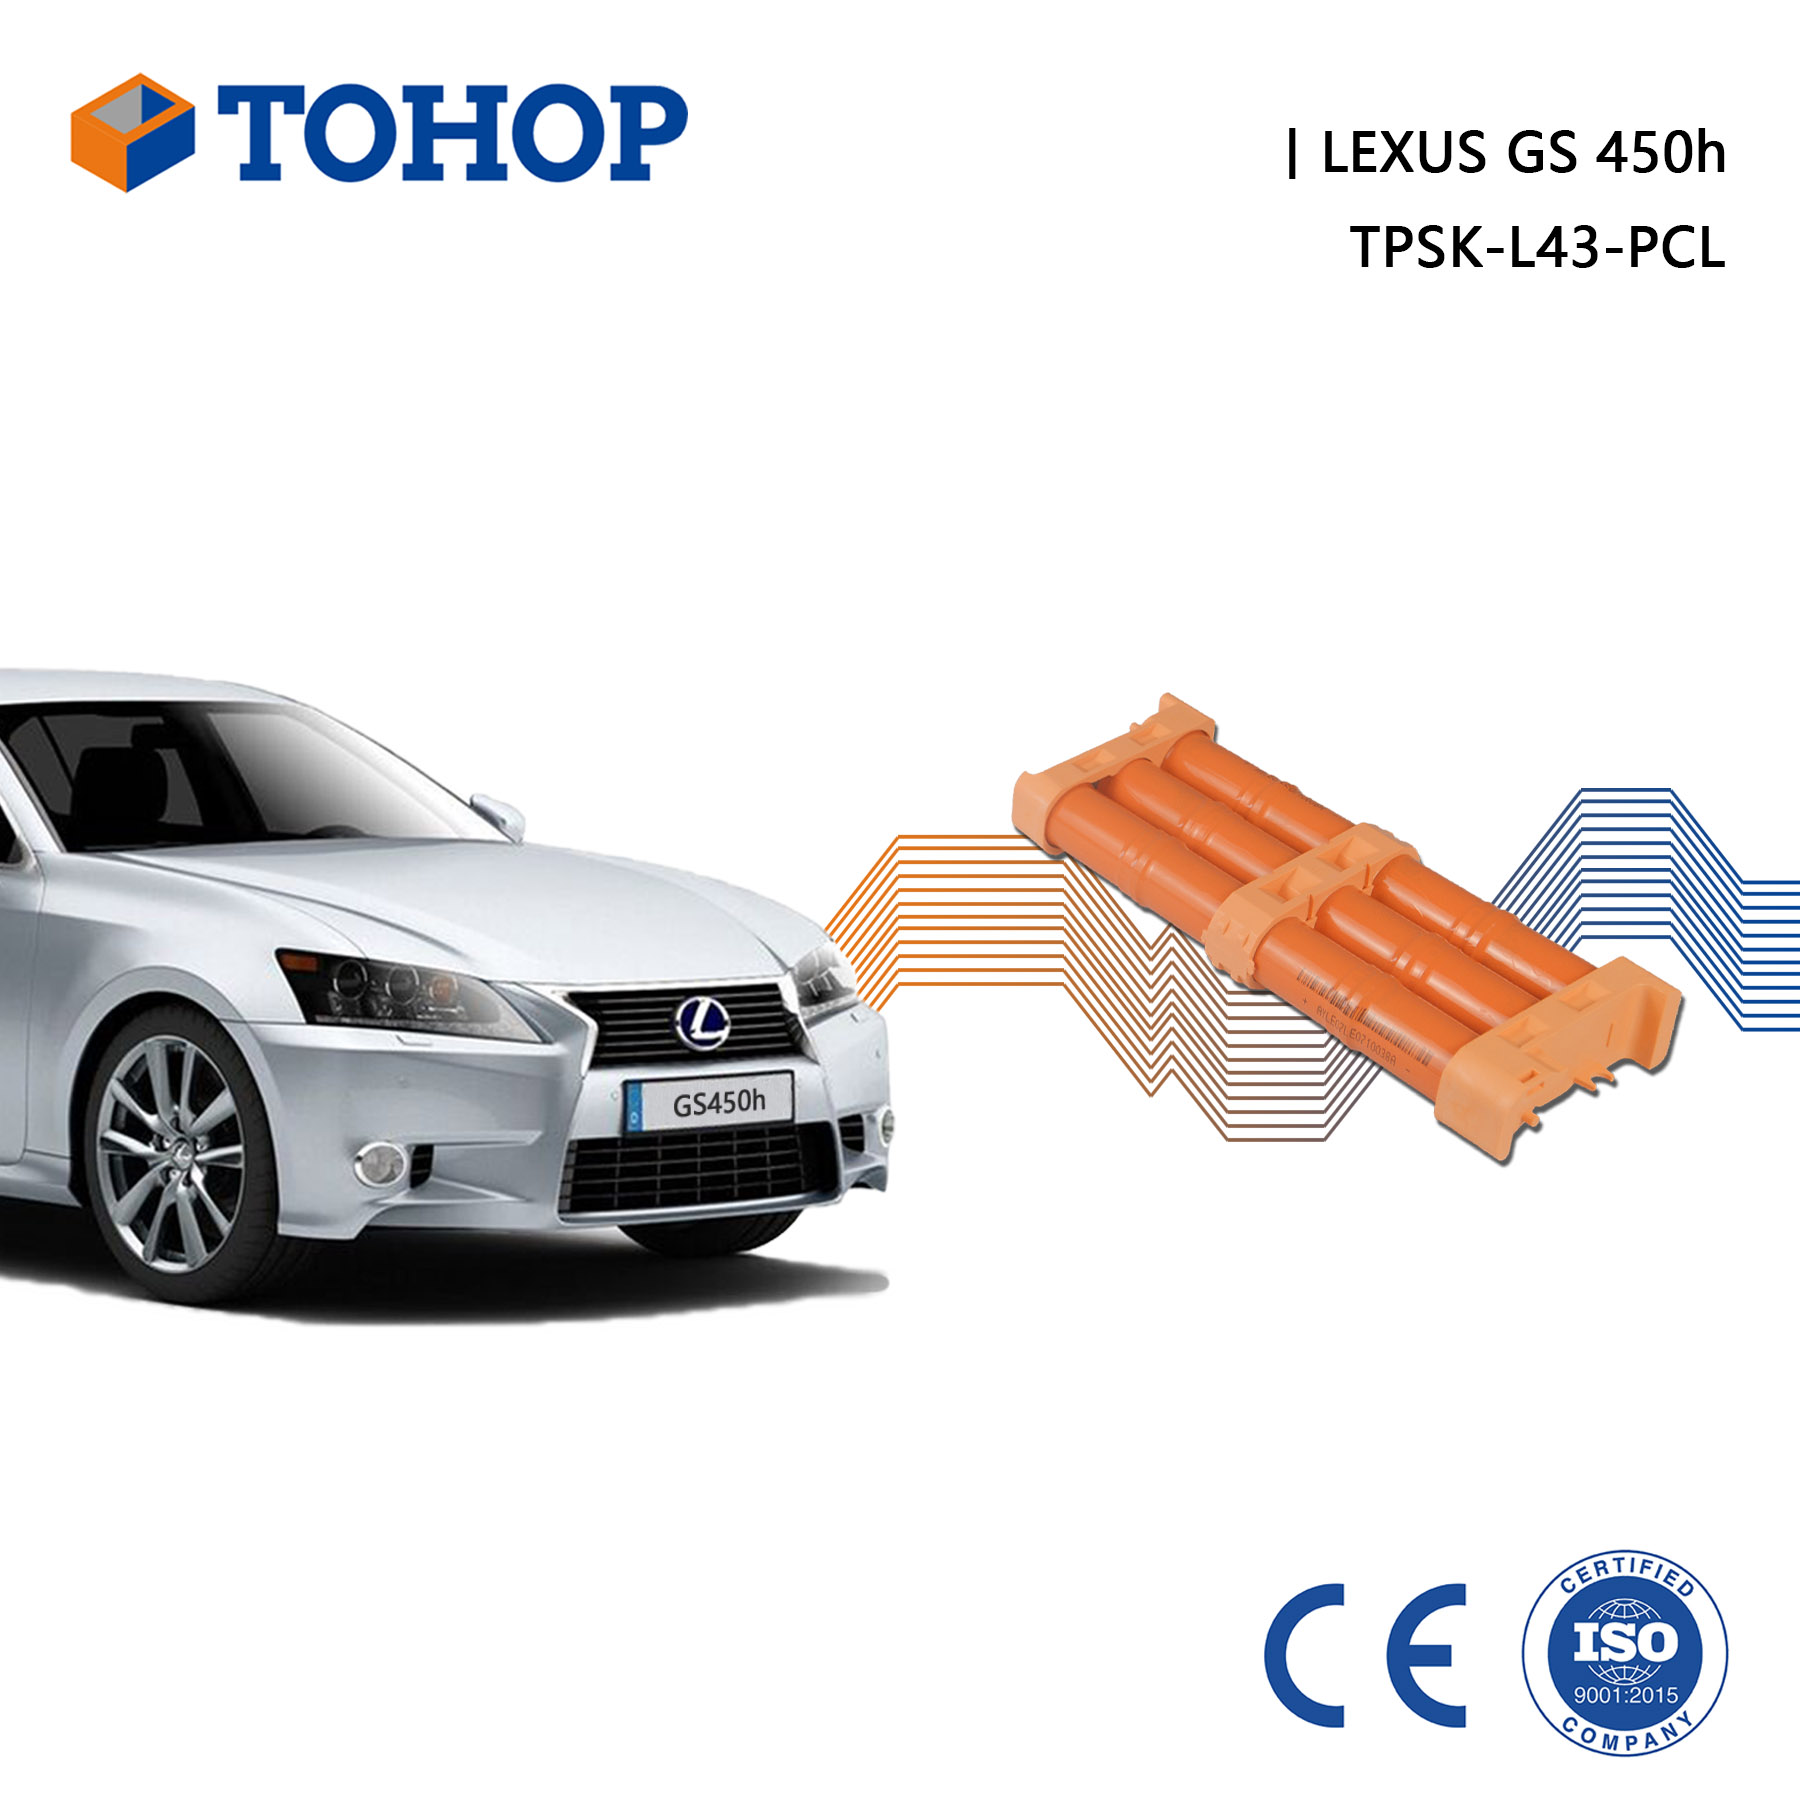 Batterie hybride de remplacement Lexus Thrid Gen. S190 pour HEV